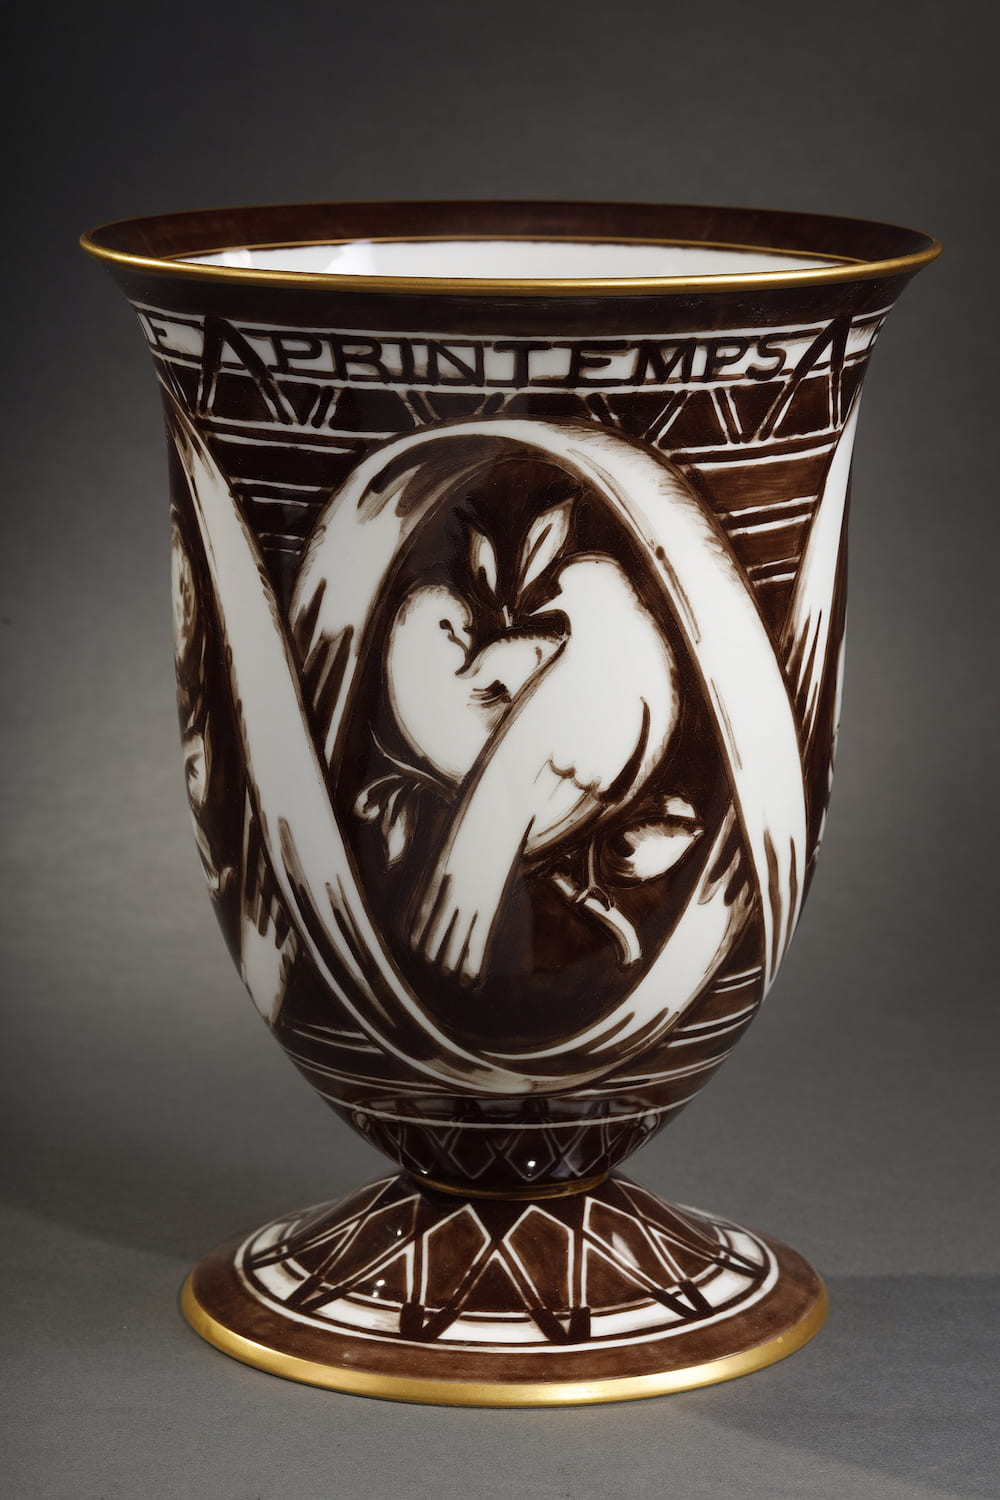 Vase "Les quatre saisons" Porcelaine émaillée France, Sèvres Louis Süe (1875-1968) Adrien Leduc (a. 1919-1964) Manufacture Nationale de SÈVRES (1740- présent)